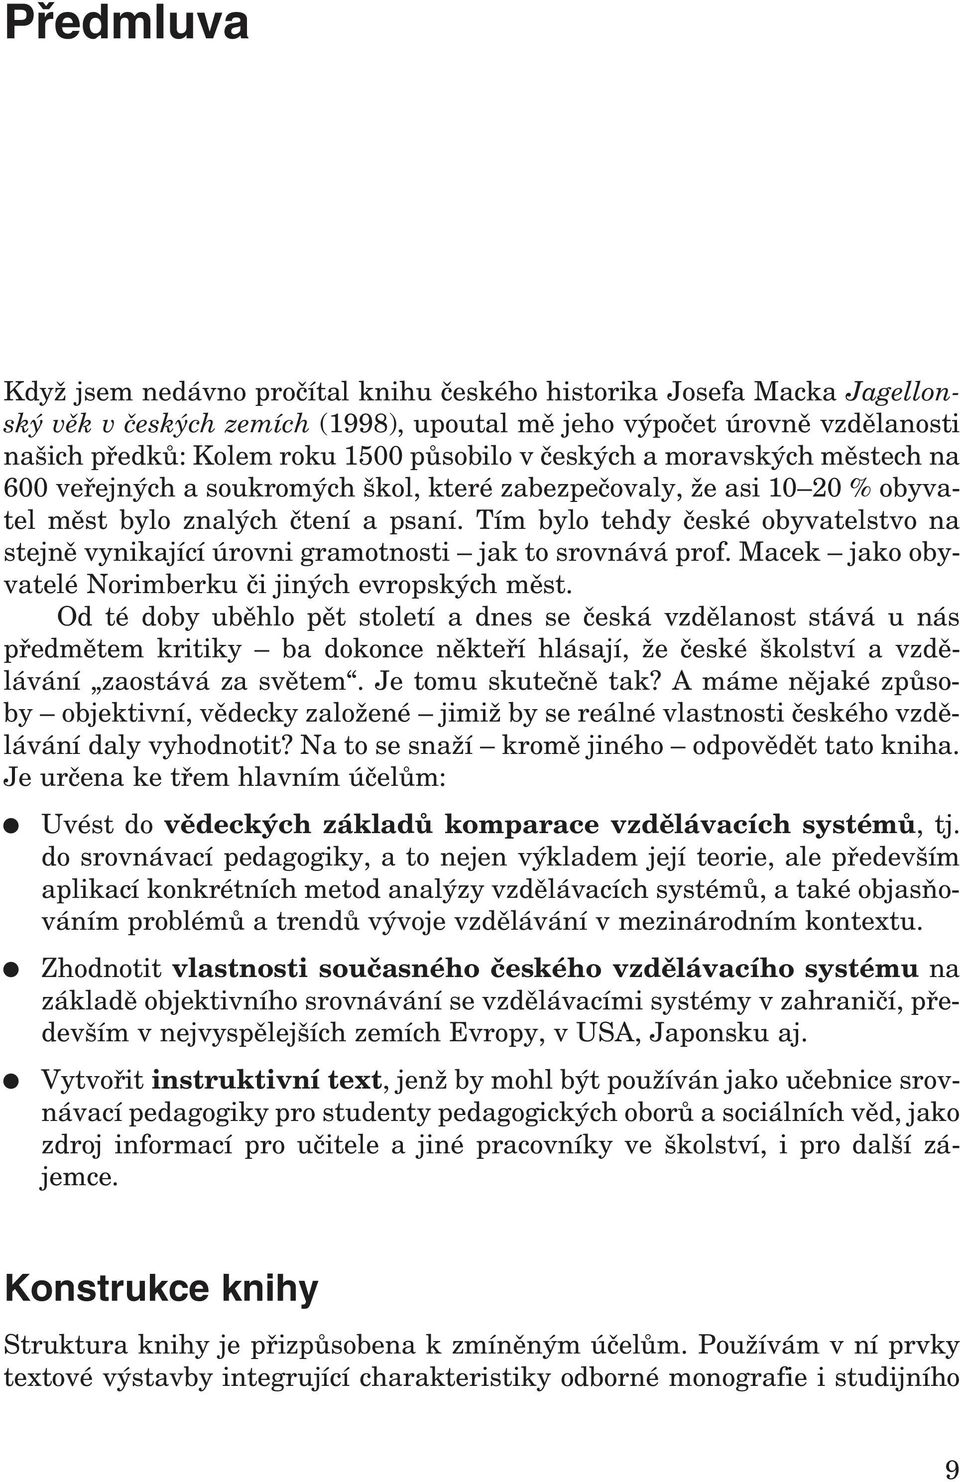 Tím bylo tehdy české obyvatelstvo na stejně vynikající úrovni gramotnosti jak to srovnává prof. Macek jako obyvatelé Norimberku či jiných evropských měst.